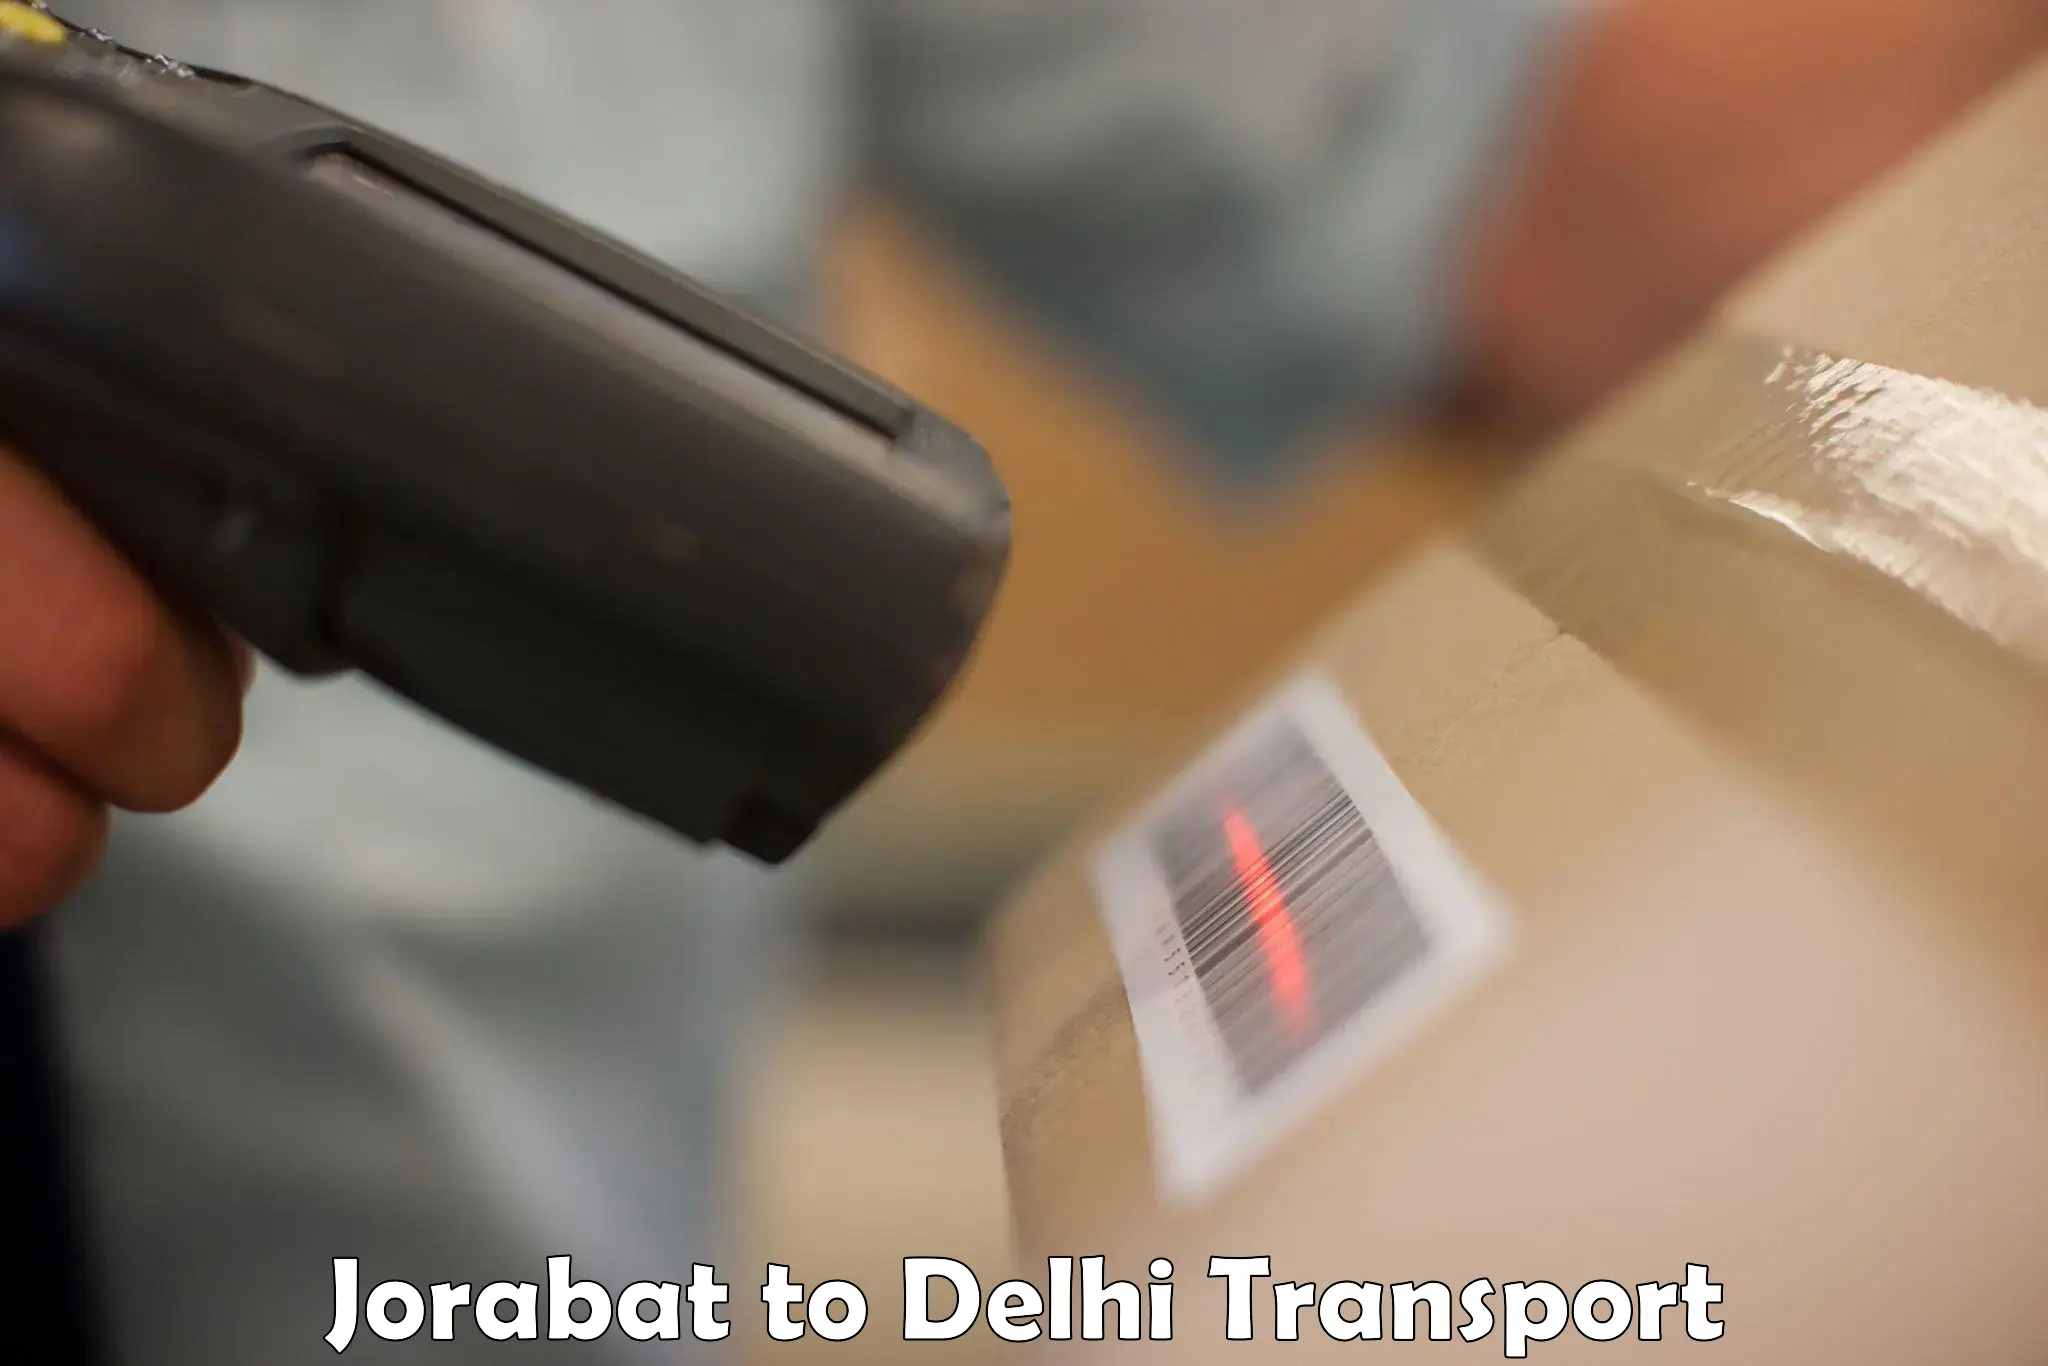 Daily transport service Jorabat to IIT Delhi